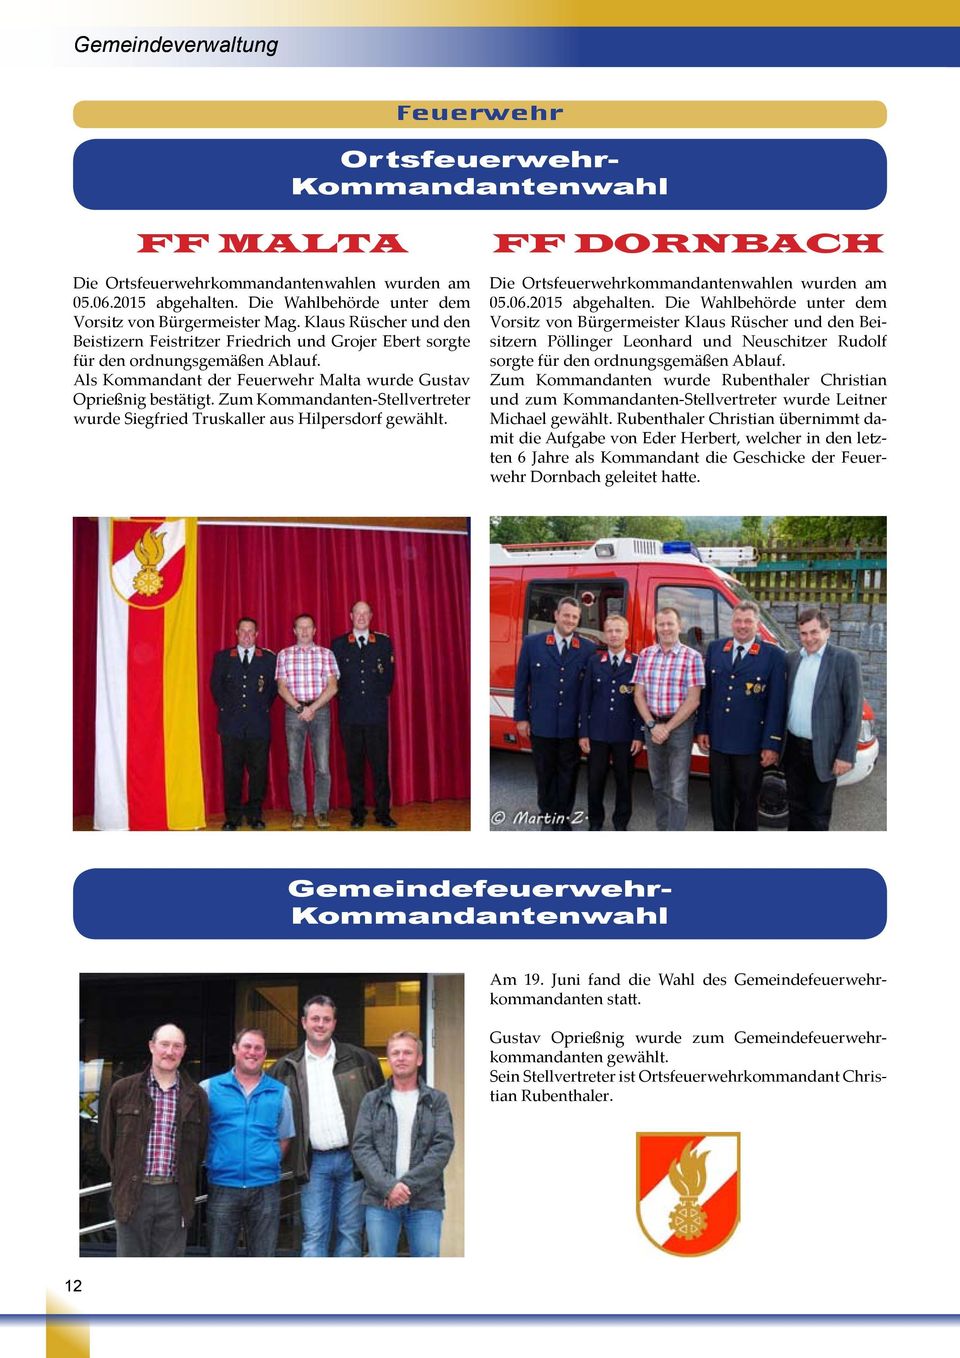 Zum Kommandanten-Stellvertreter wurde Siegfried Truskaller aus Hilpersdorf gewählt. FF Dornbach Die Ortsfeuerwehrkommandantenwahlen wurden am 05.06.2015 abgehalten.